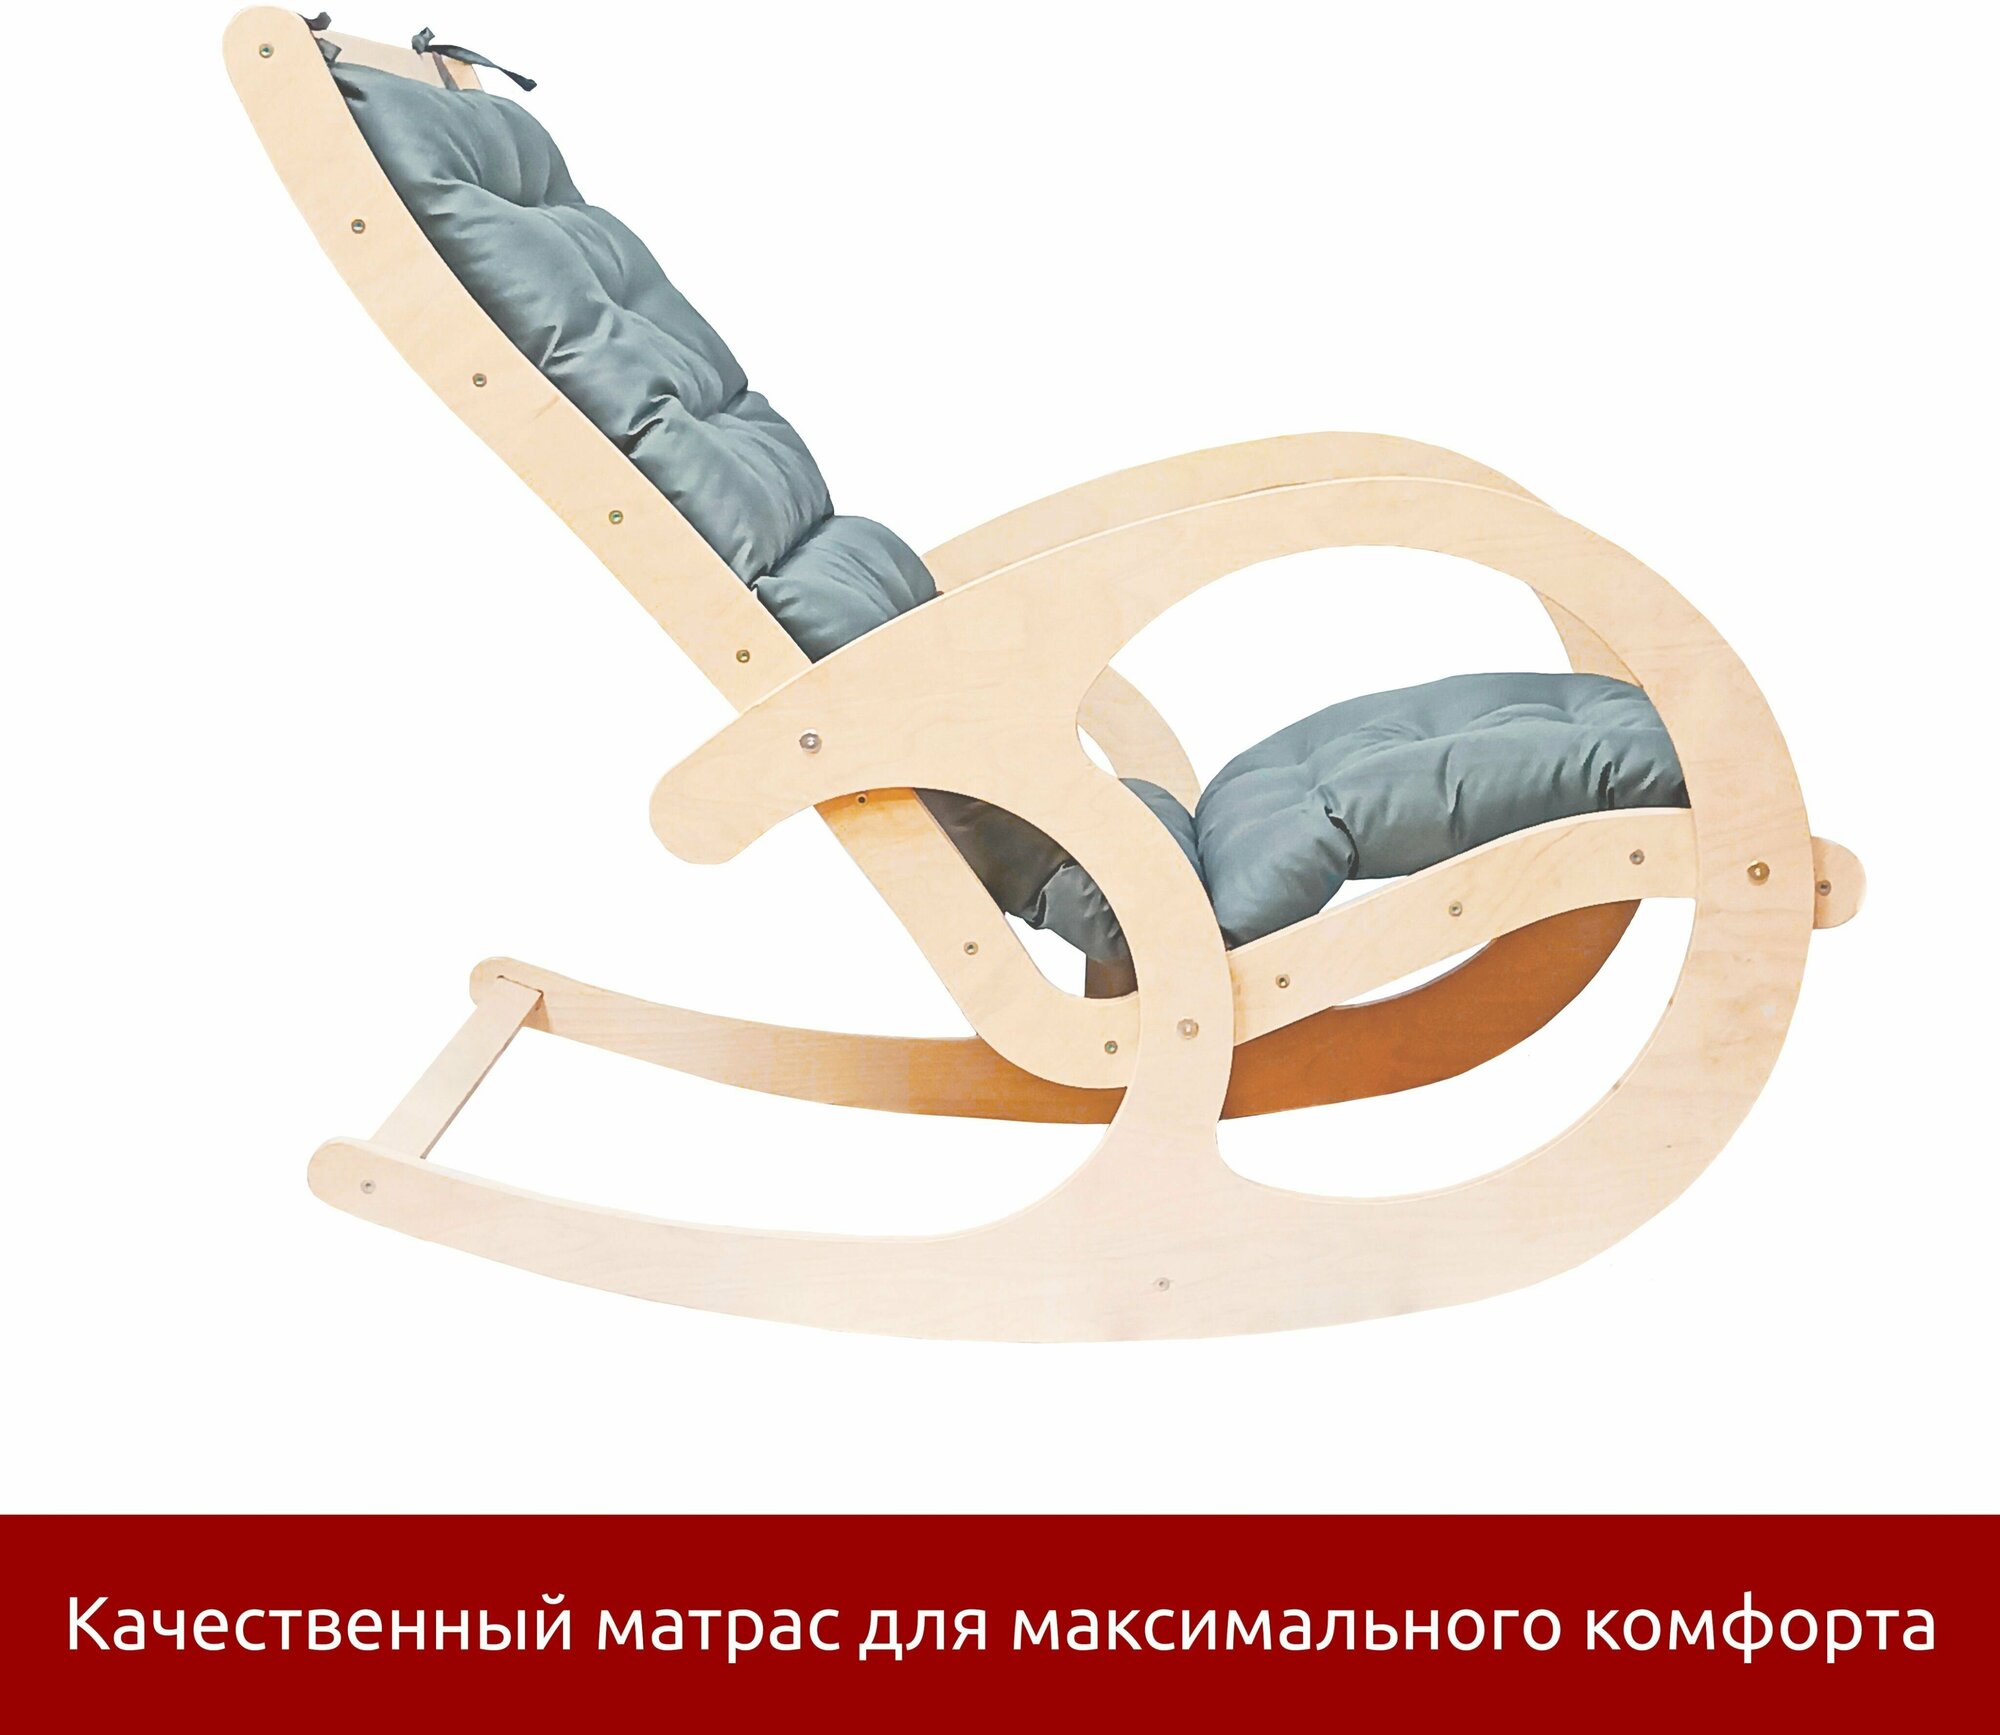 Кресло-качалка с матрасом для взрослых и детей, мебель для дачи